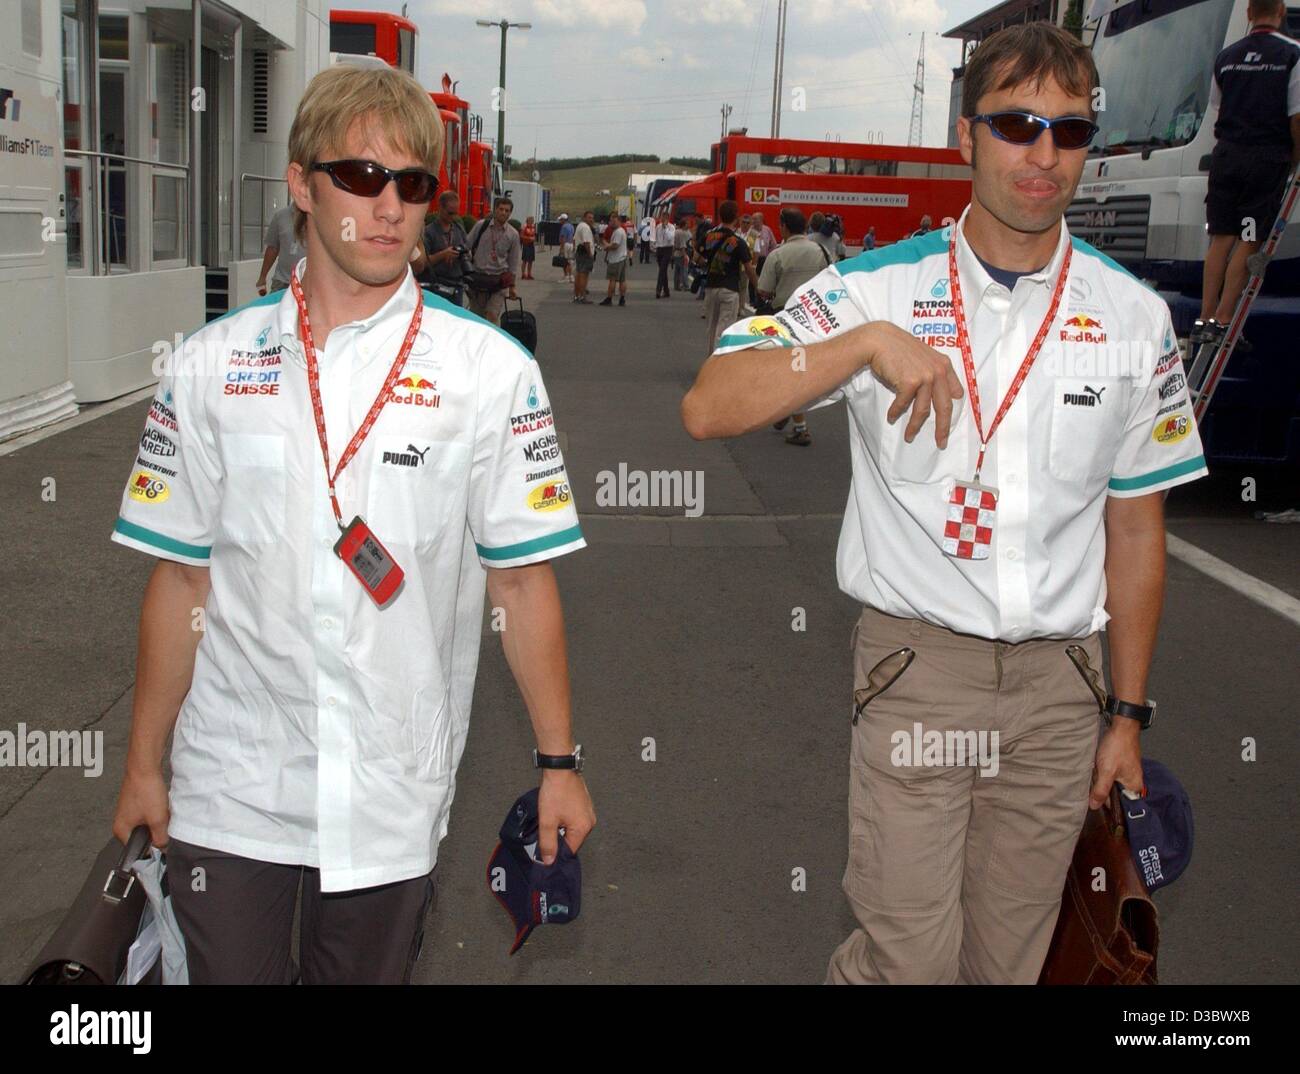 (Afp) - Les deux pilotes de Formule 1 Allemand Nick Heidfeld (L) et Heinz-Harald Frentzen, tous deux de l'équipe suisse Sauber, marcher à travers la zone du conducteur sur le Hungaroring race track près de Budapest, Hongrie, 22 août 2003. Sauber a annoncé qu'elle a recruté l'Italien Giancarlo Fisichella (Jordan-Ford) Banque D'Images